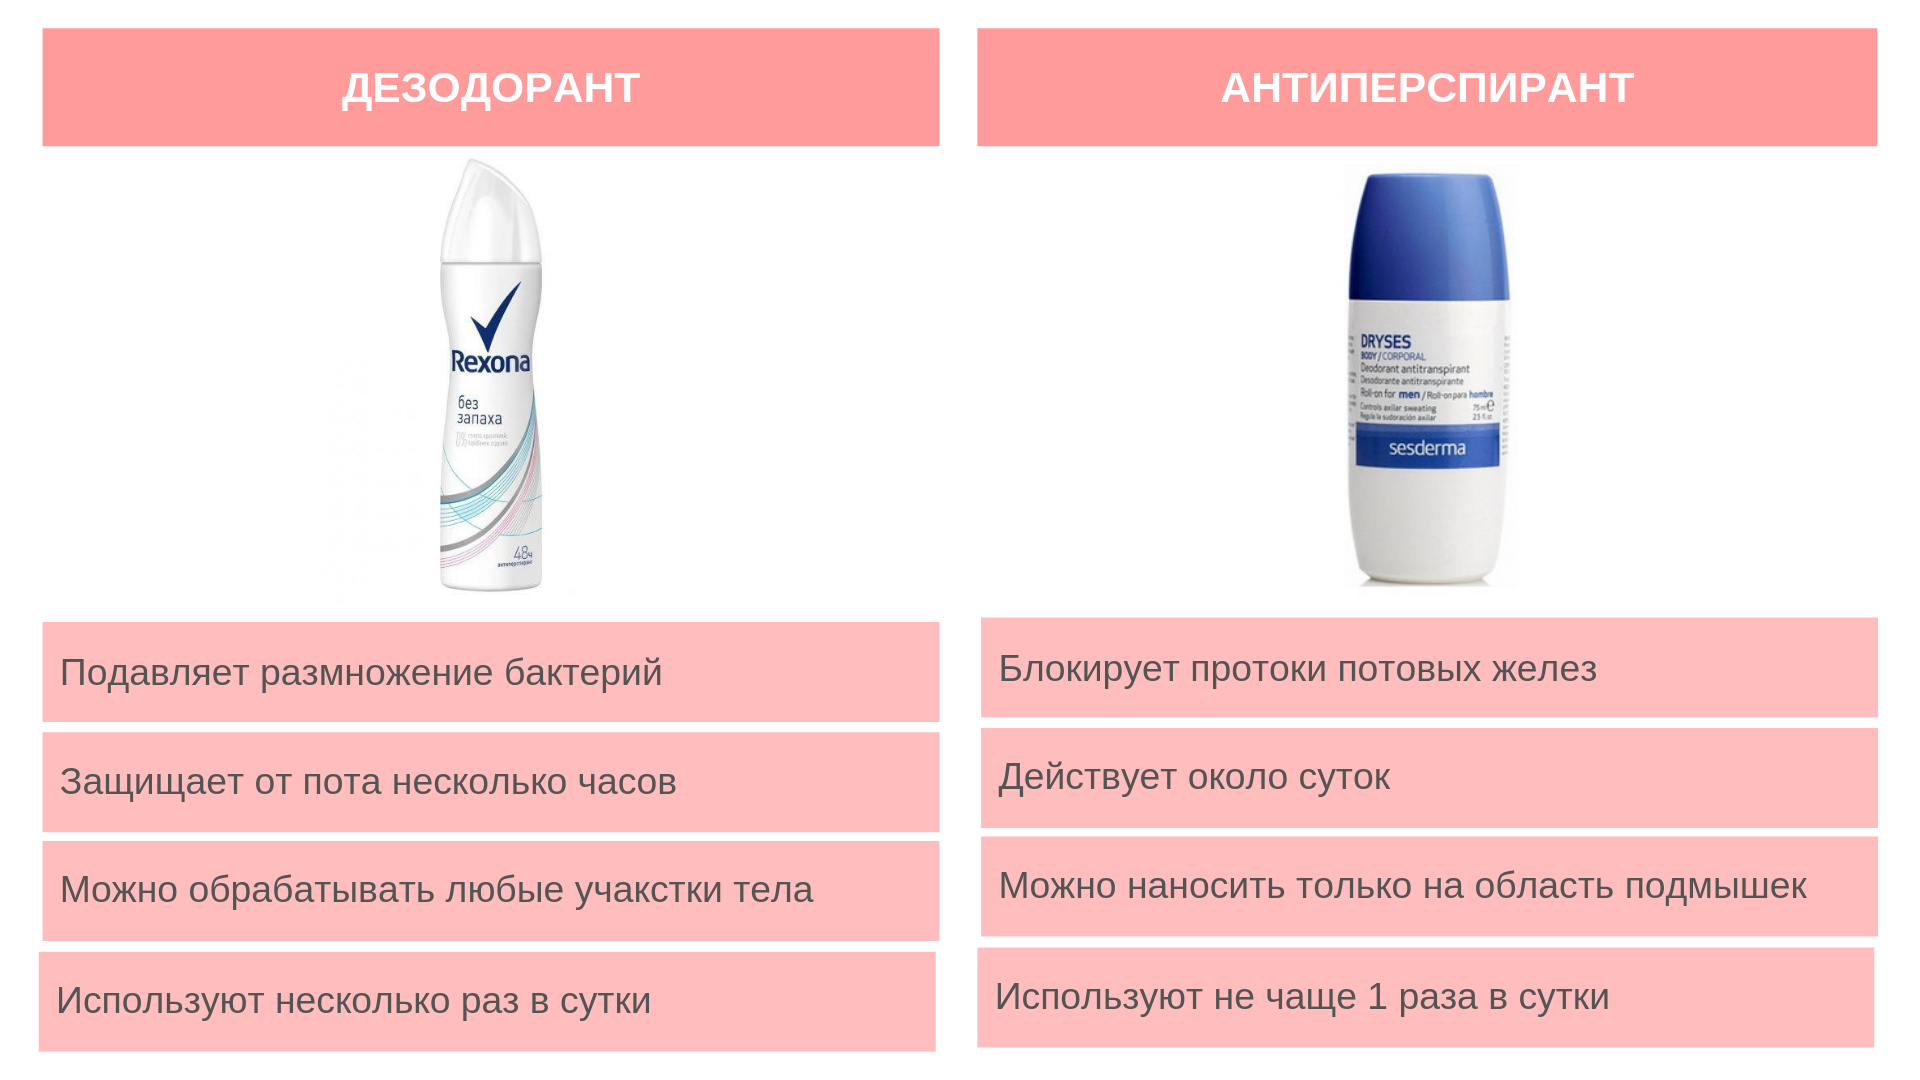 Как правильно антиперспирант. Дезодорант и антиперспирант отличия и разница. Дезодорант и антиперспирант отличия. Разница между дезодорантом и антиперспирантом. Различие дезодоранта и антиперспиранта.